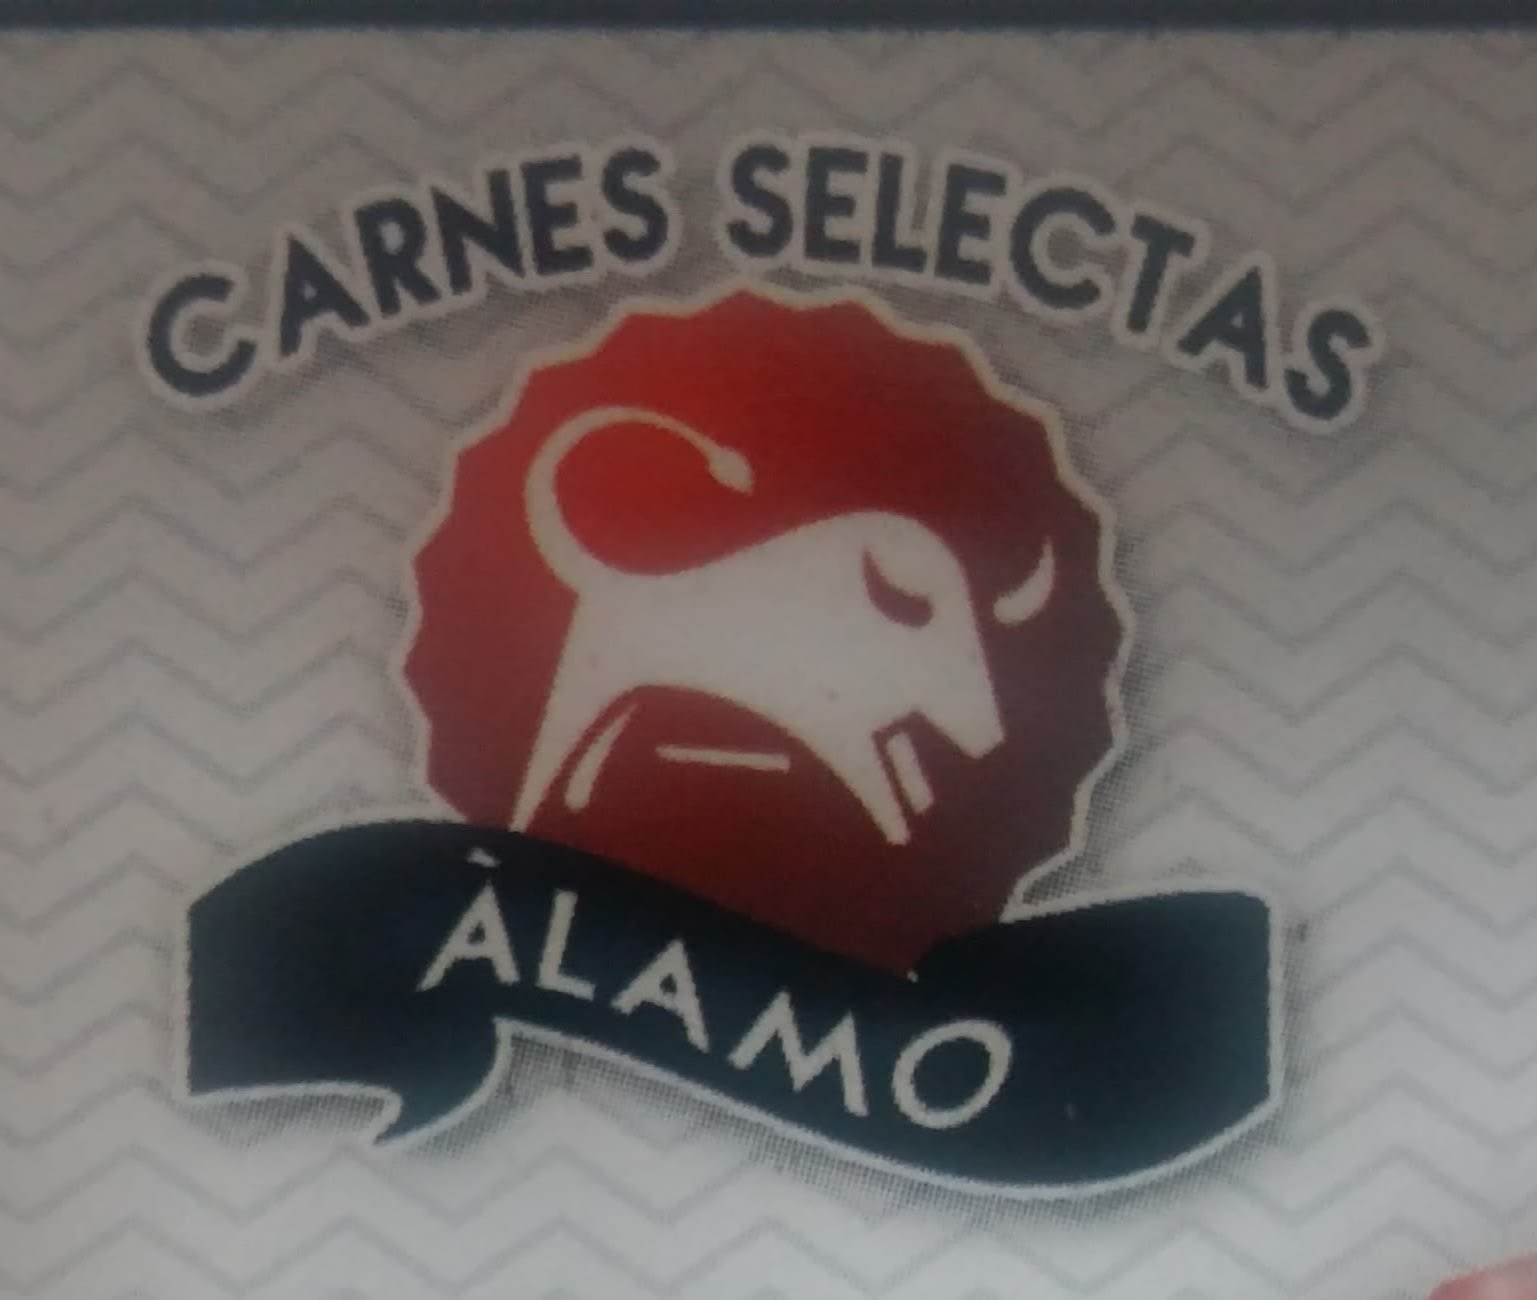 Carnes Selectas Alamo